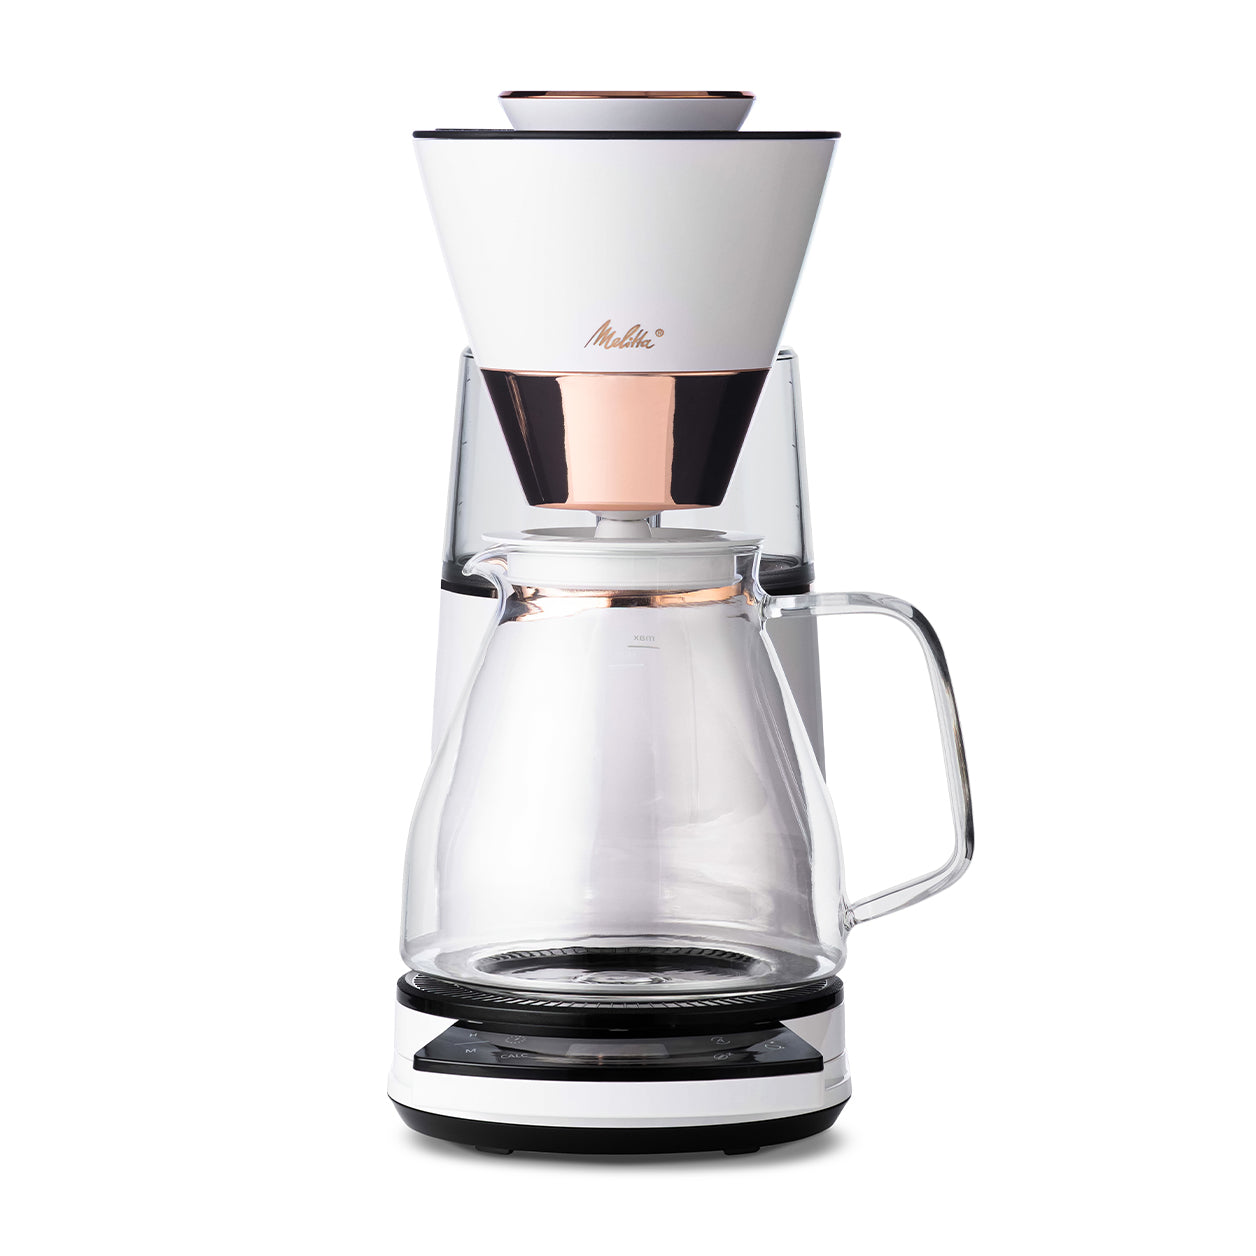 Melitta Vision Automatic Drip Coffee Maker Copper White